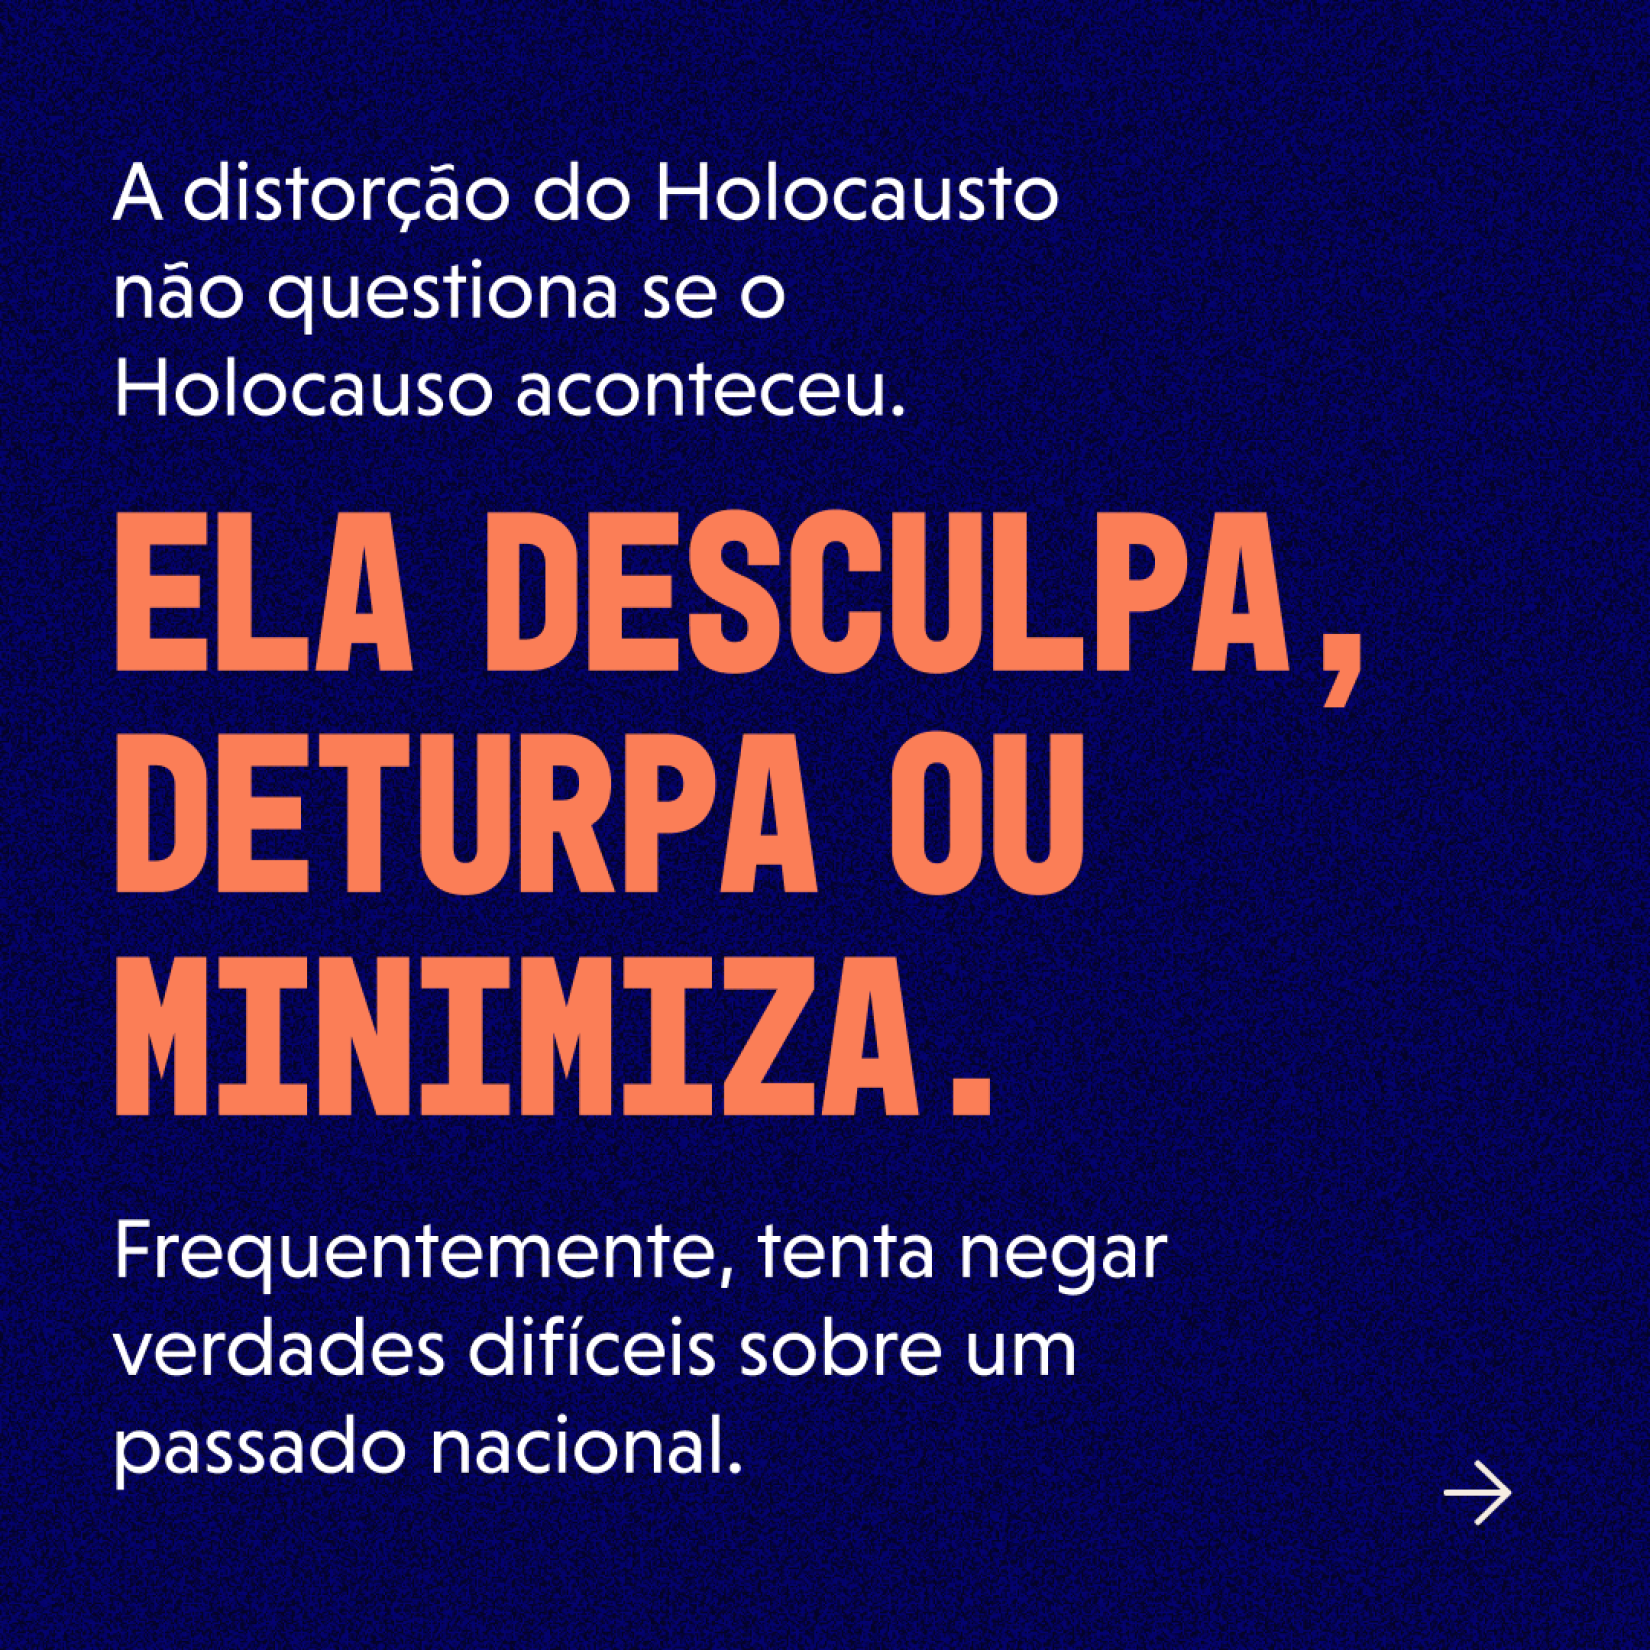 #ProtejaOsFatos: Una-se à campanha global contra a distorção e negação do Holocausto. 